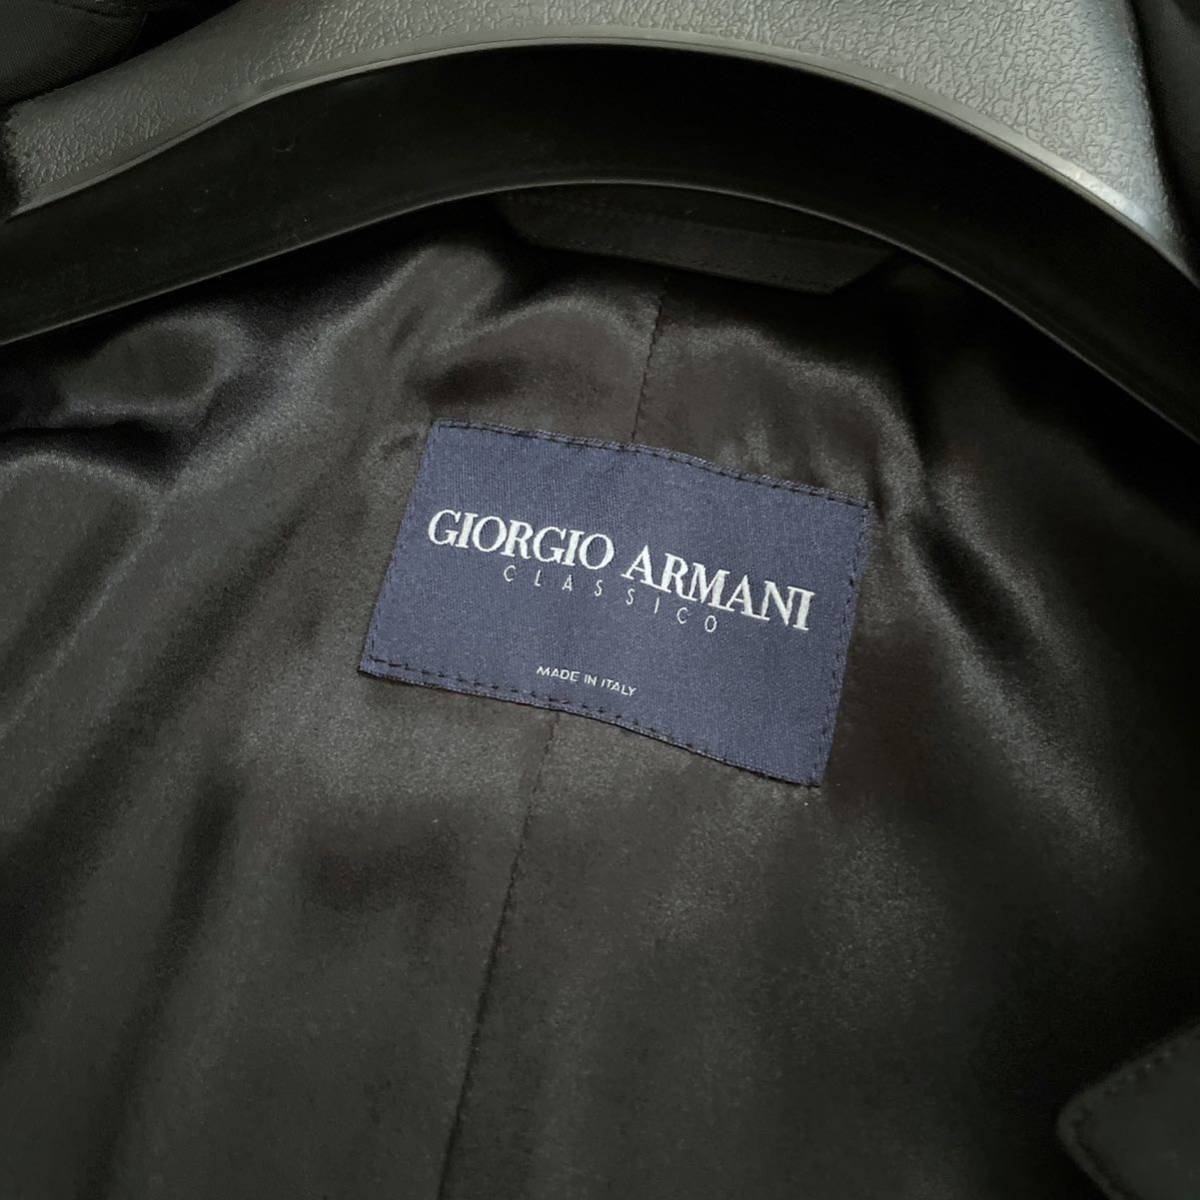 [ free shipping ][ beautiful goods ]GIORGIO ARMANIjoru geo Armani top class line Classico Loro Piana turn-down collar coat black 36